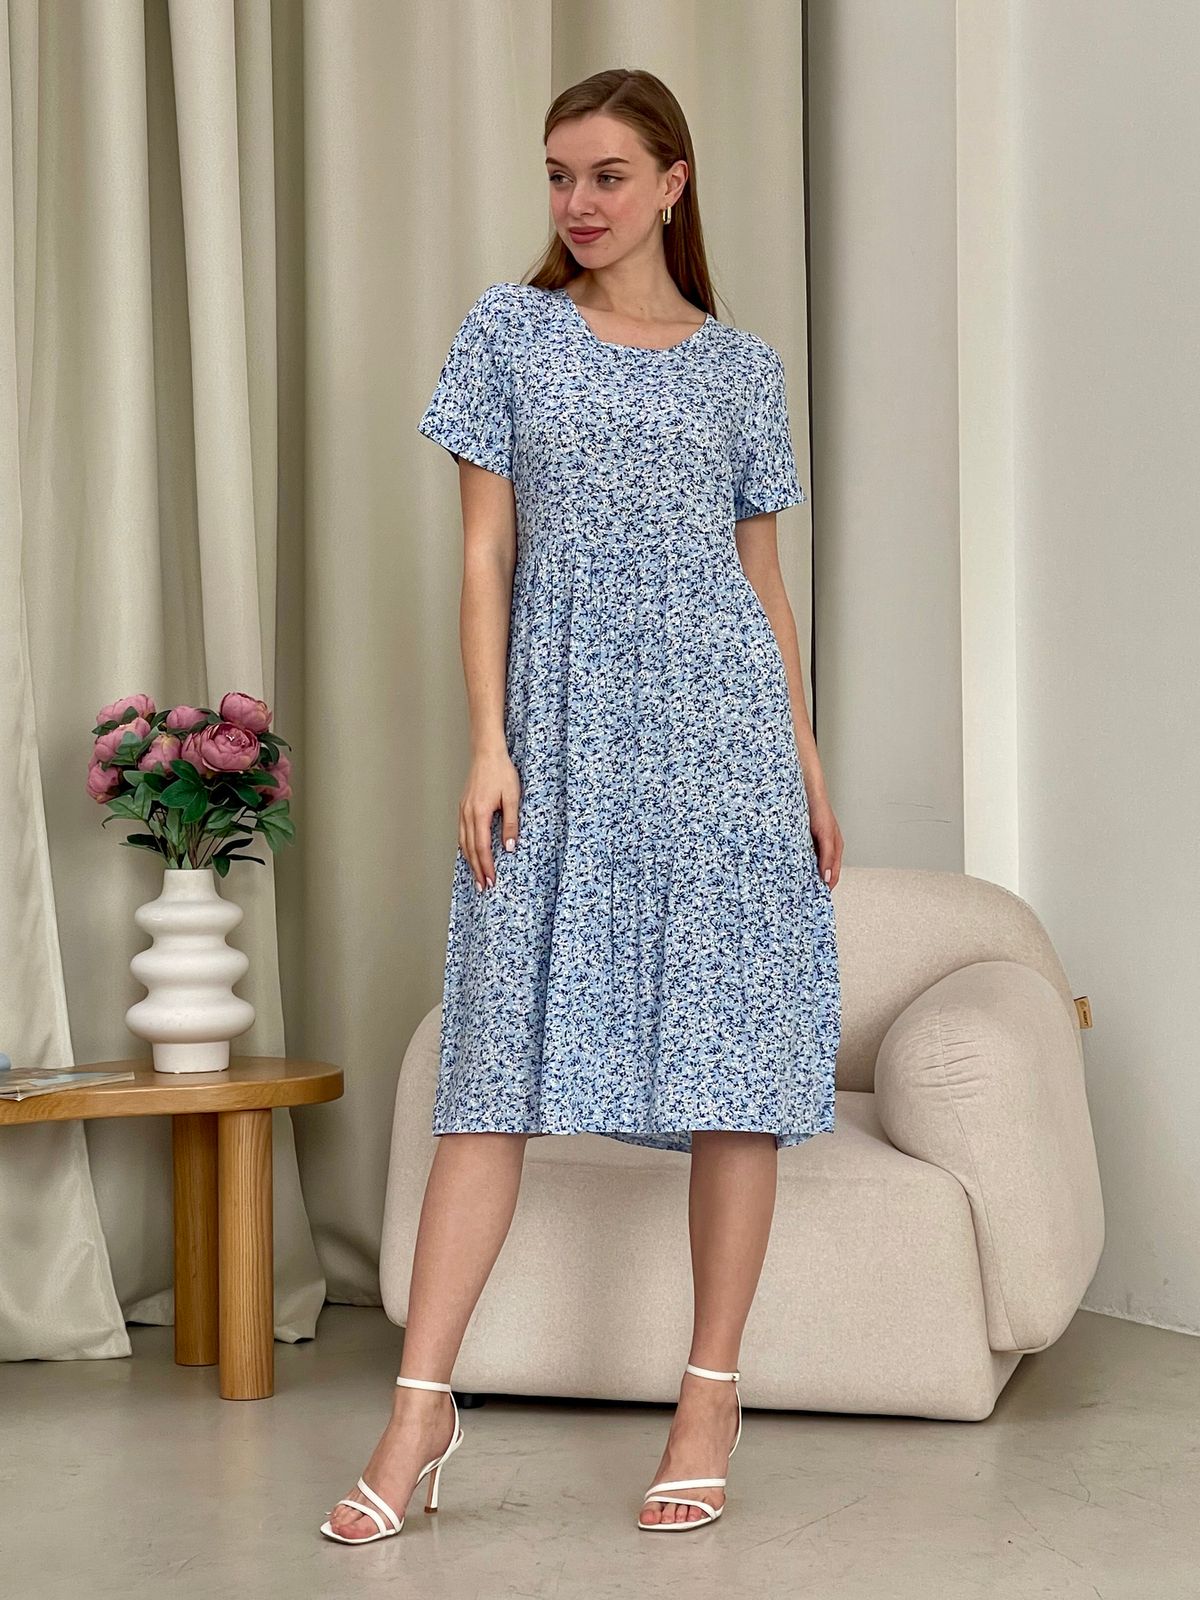 Купить Летнее платье с рюшами в цветочек голубое Merlini Казерта 700001265 размер 42-44 (S-M) в интернет-магазине